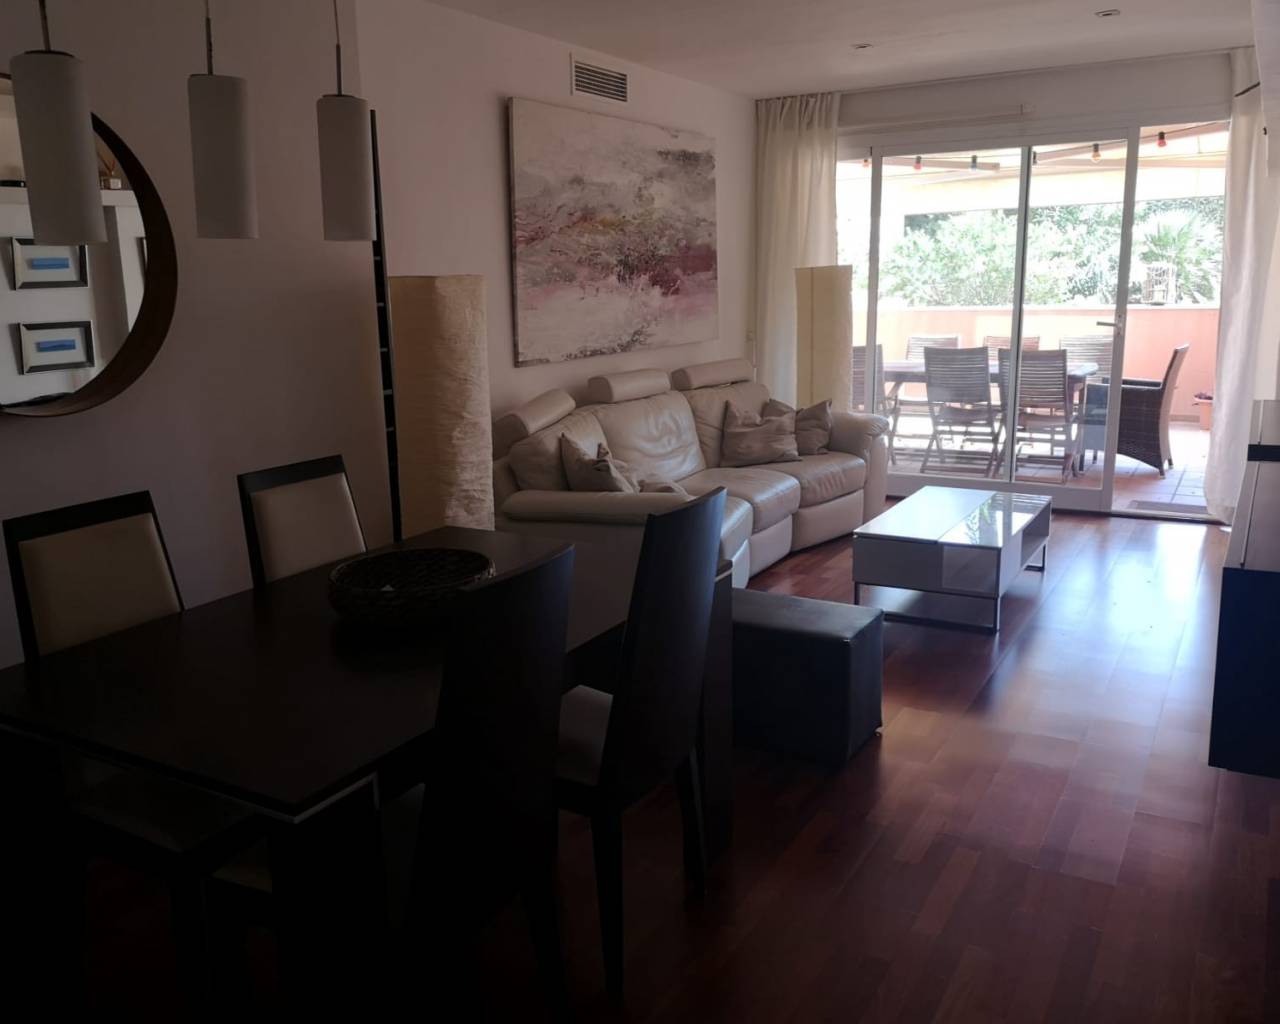 Rent a flat in El Torreno, Palma de mallorca-Mallorca estate agents